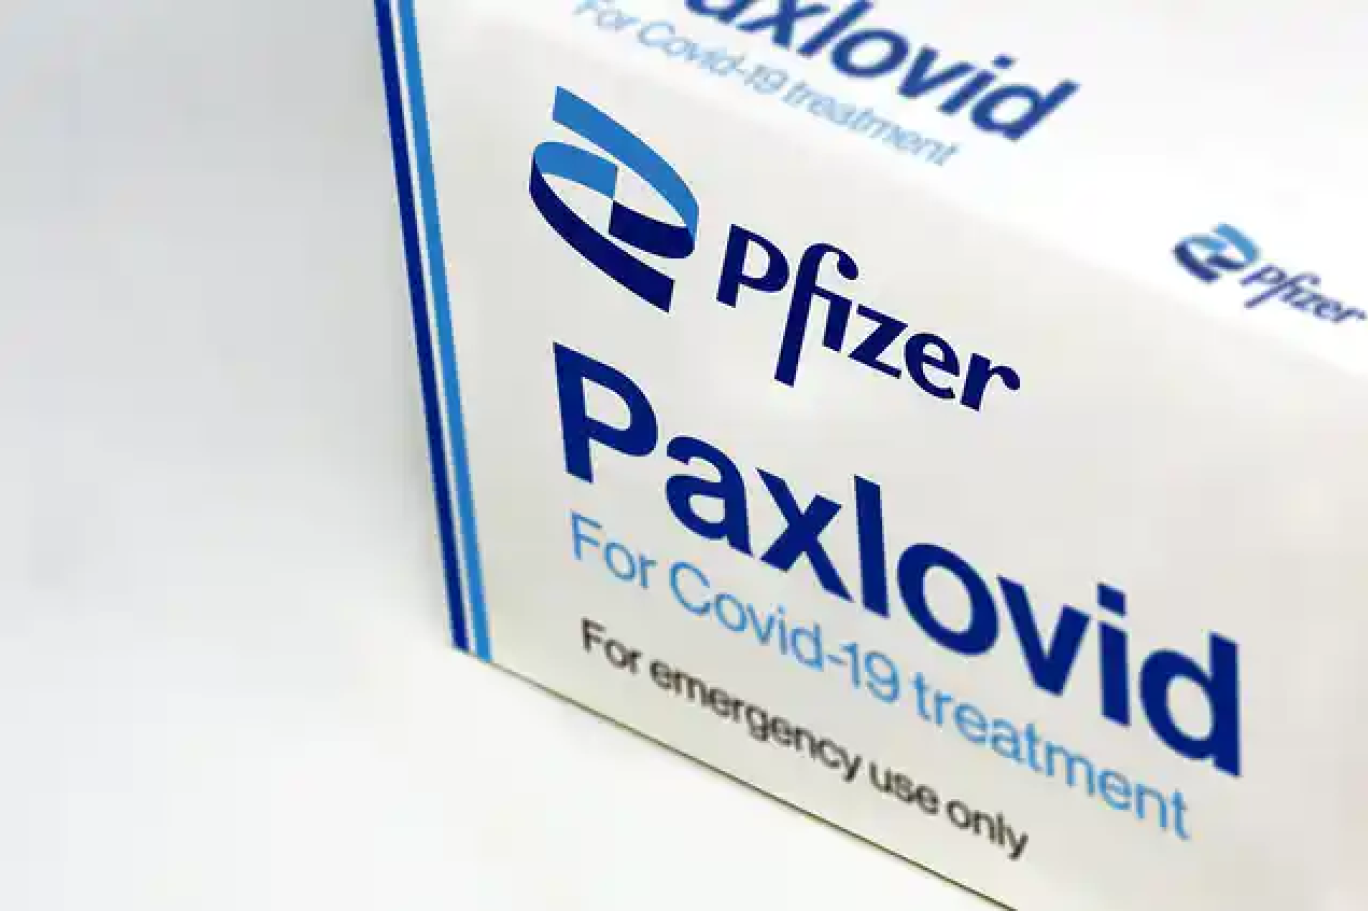 pfizer, paxlovid'in 6-17 yaş grubu i̇çin klinik deneylerine başladı